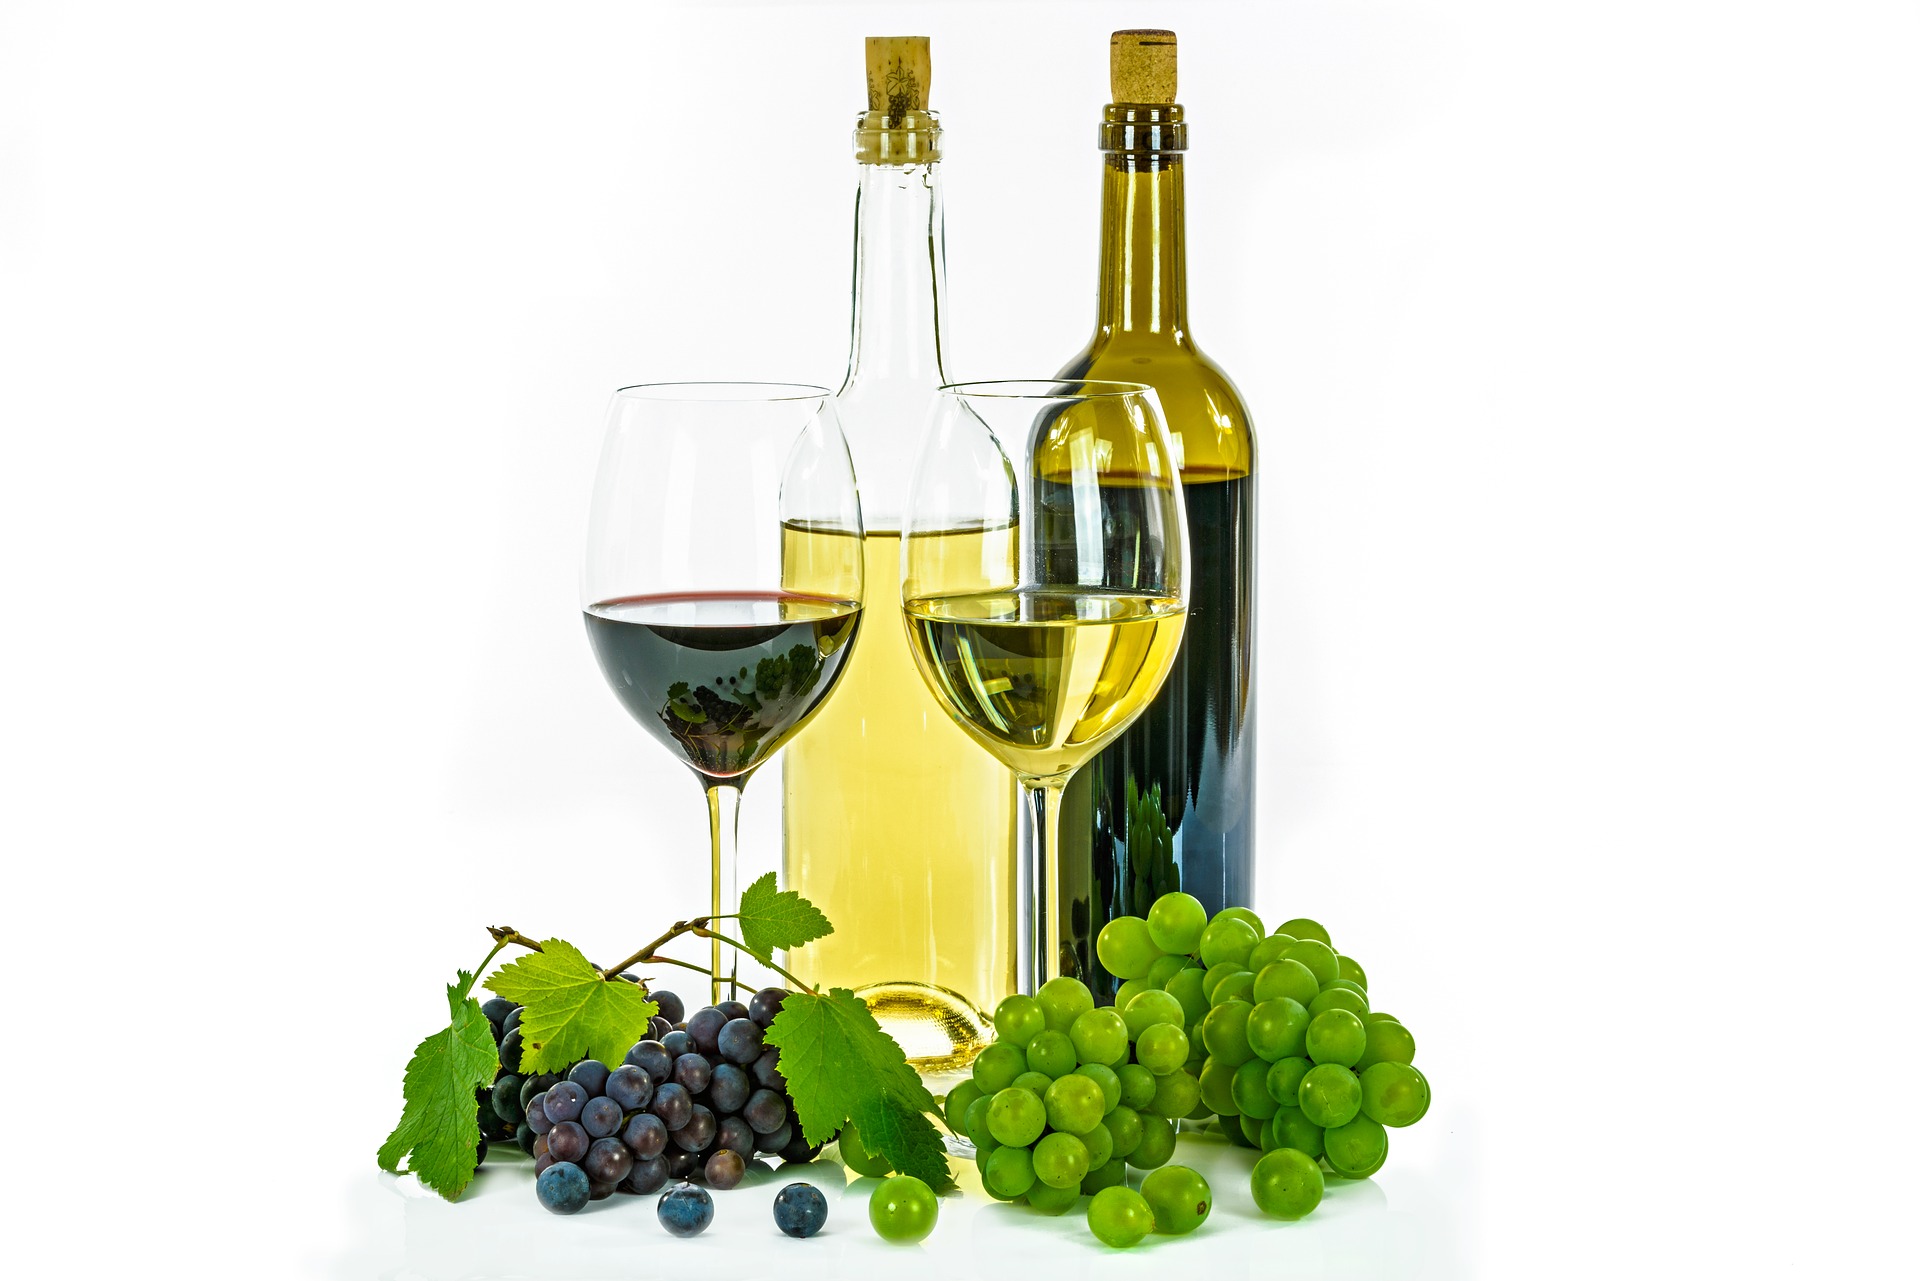 Kennismaken met wijnen uit Frankrijk en Italië